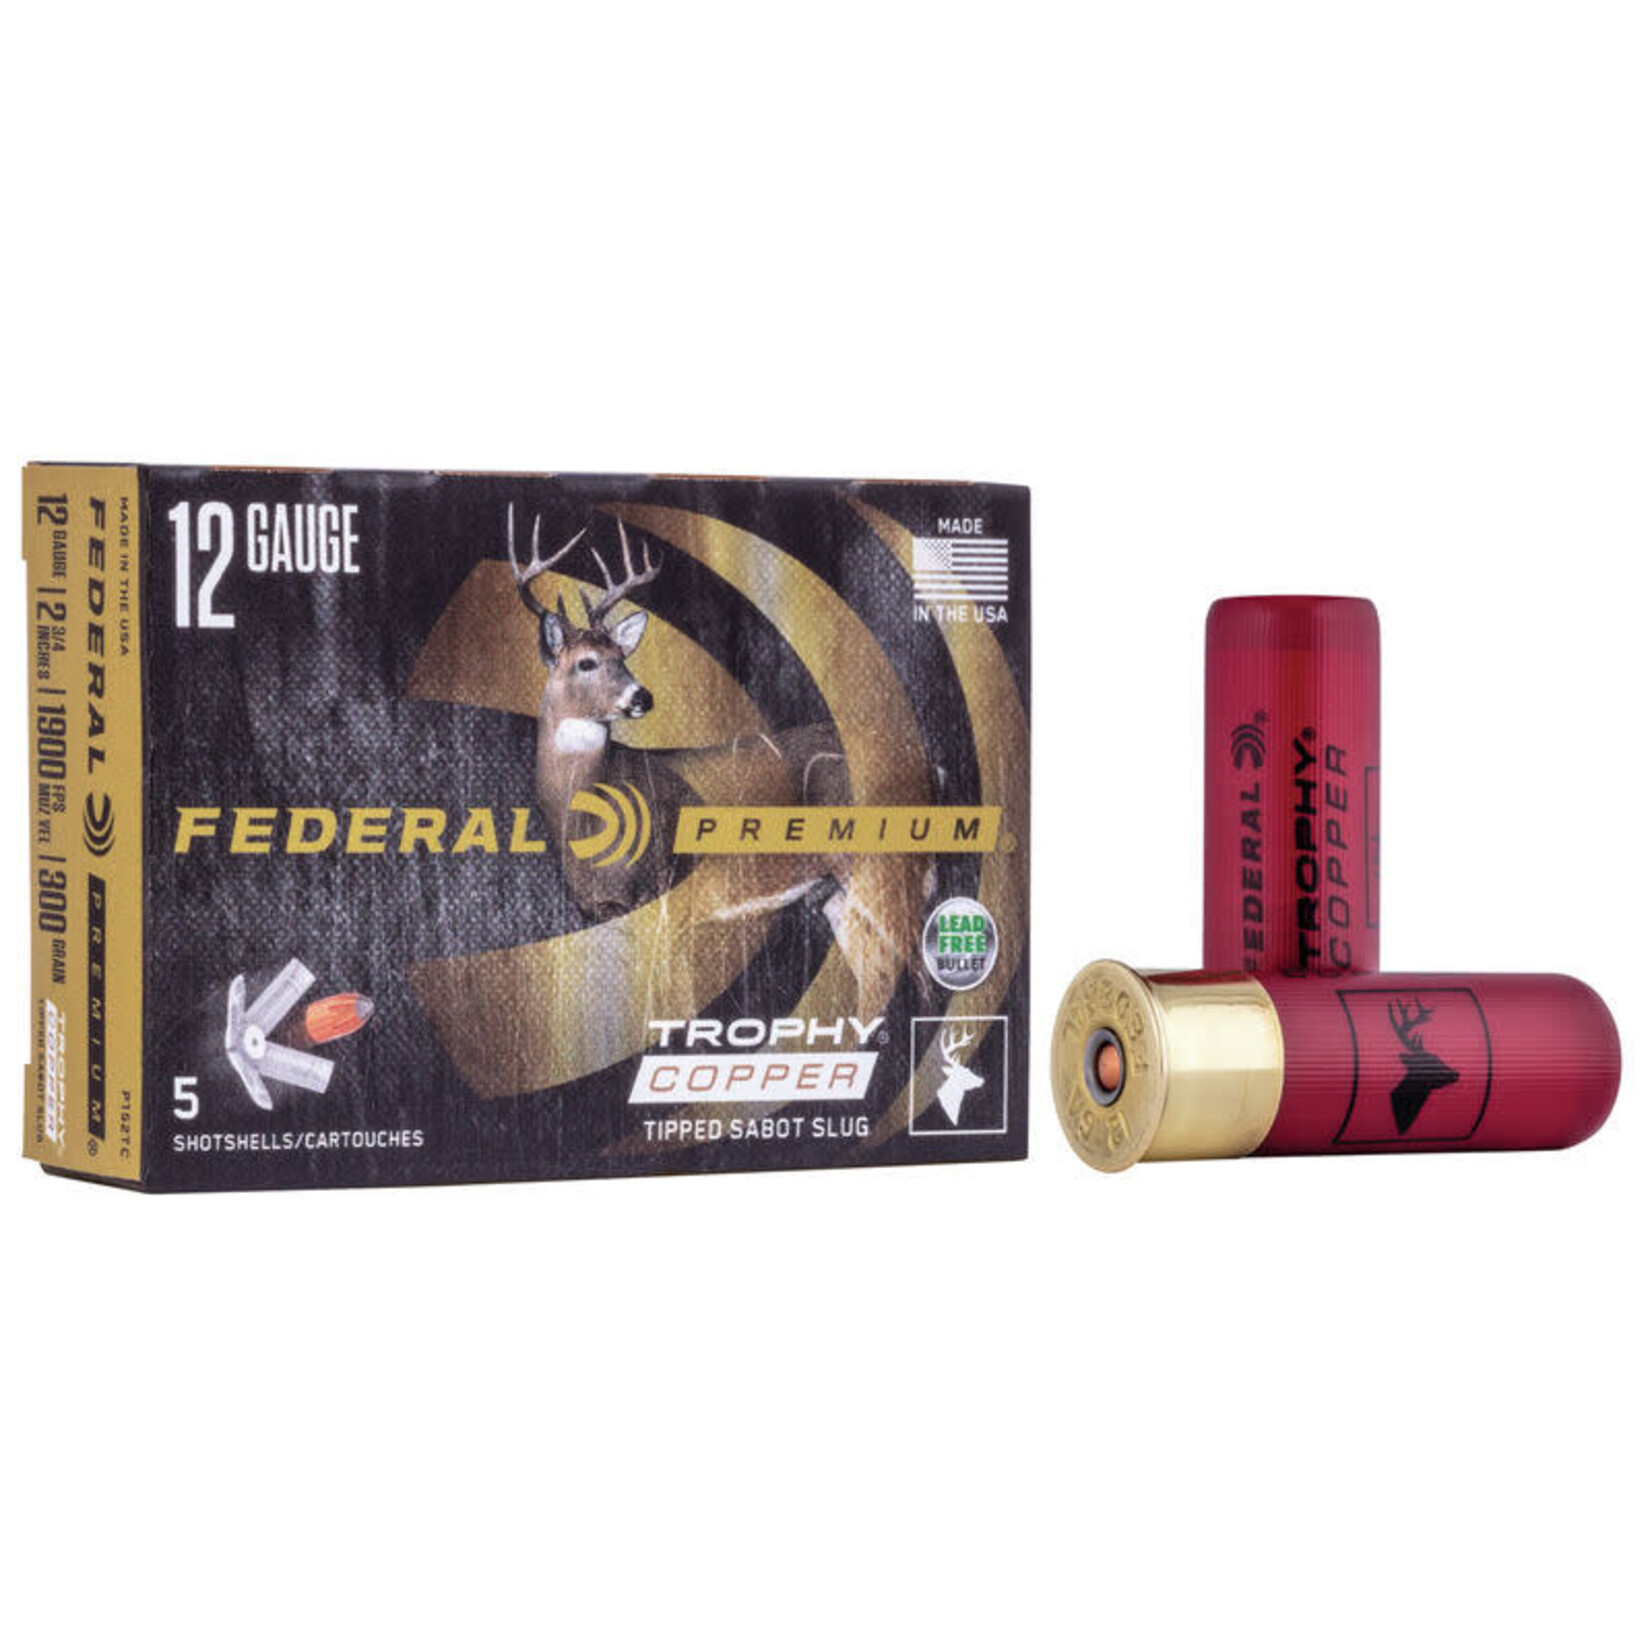 FEDERAL Munitions Federal Premium Trophy Copper Slug Cal. 12 2-3/4'' 300Gr